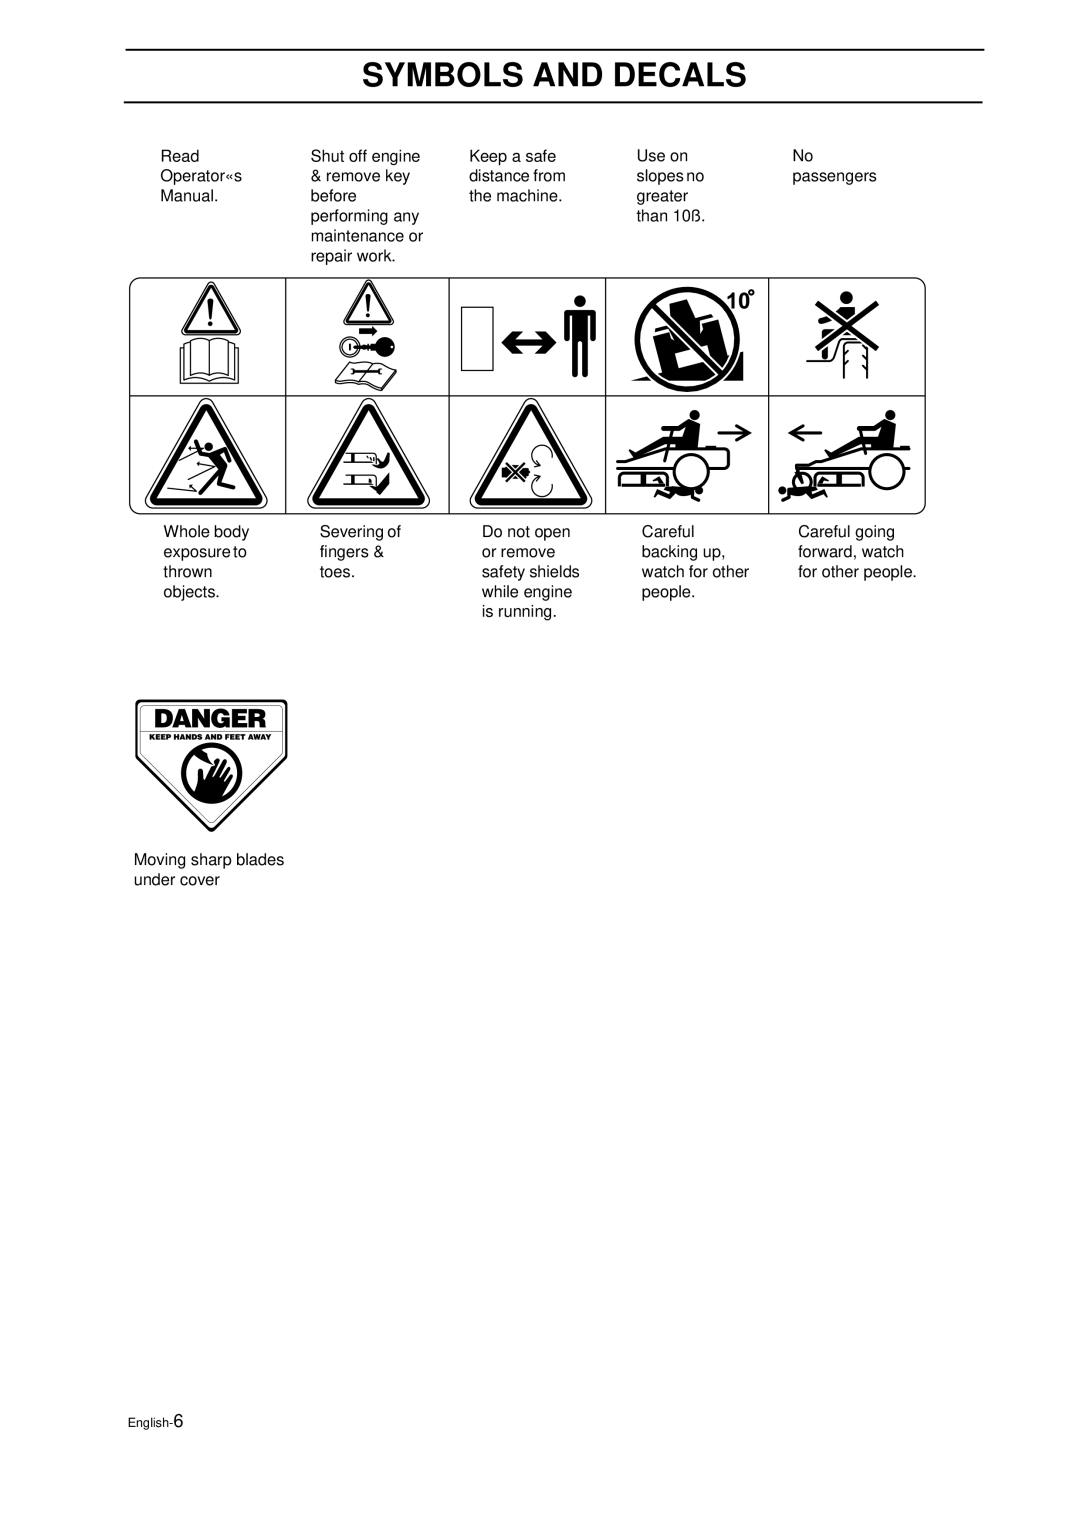 Husqvarna IZ 21 manual Symbols And Decals, Read 